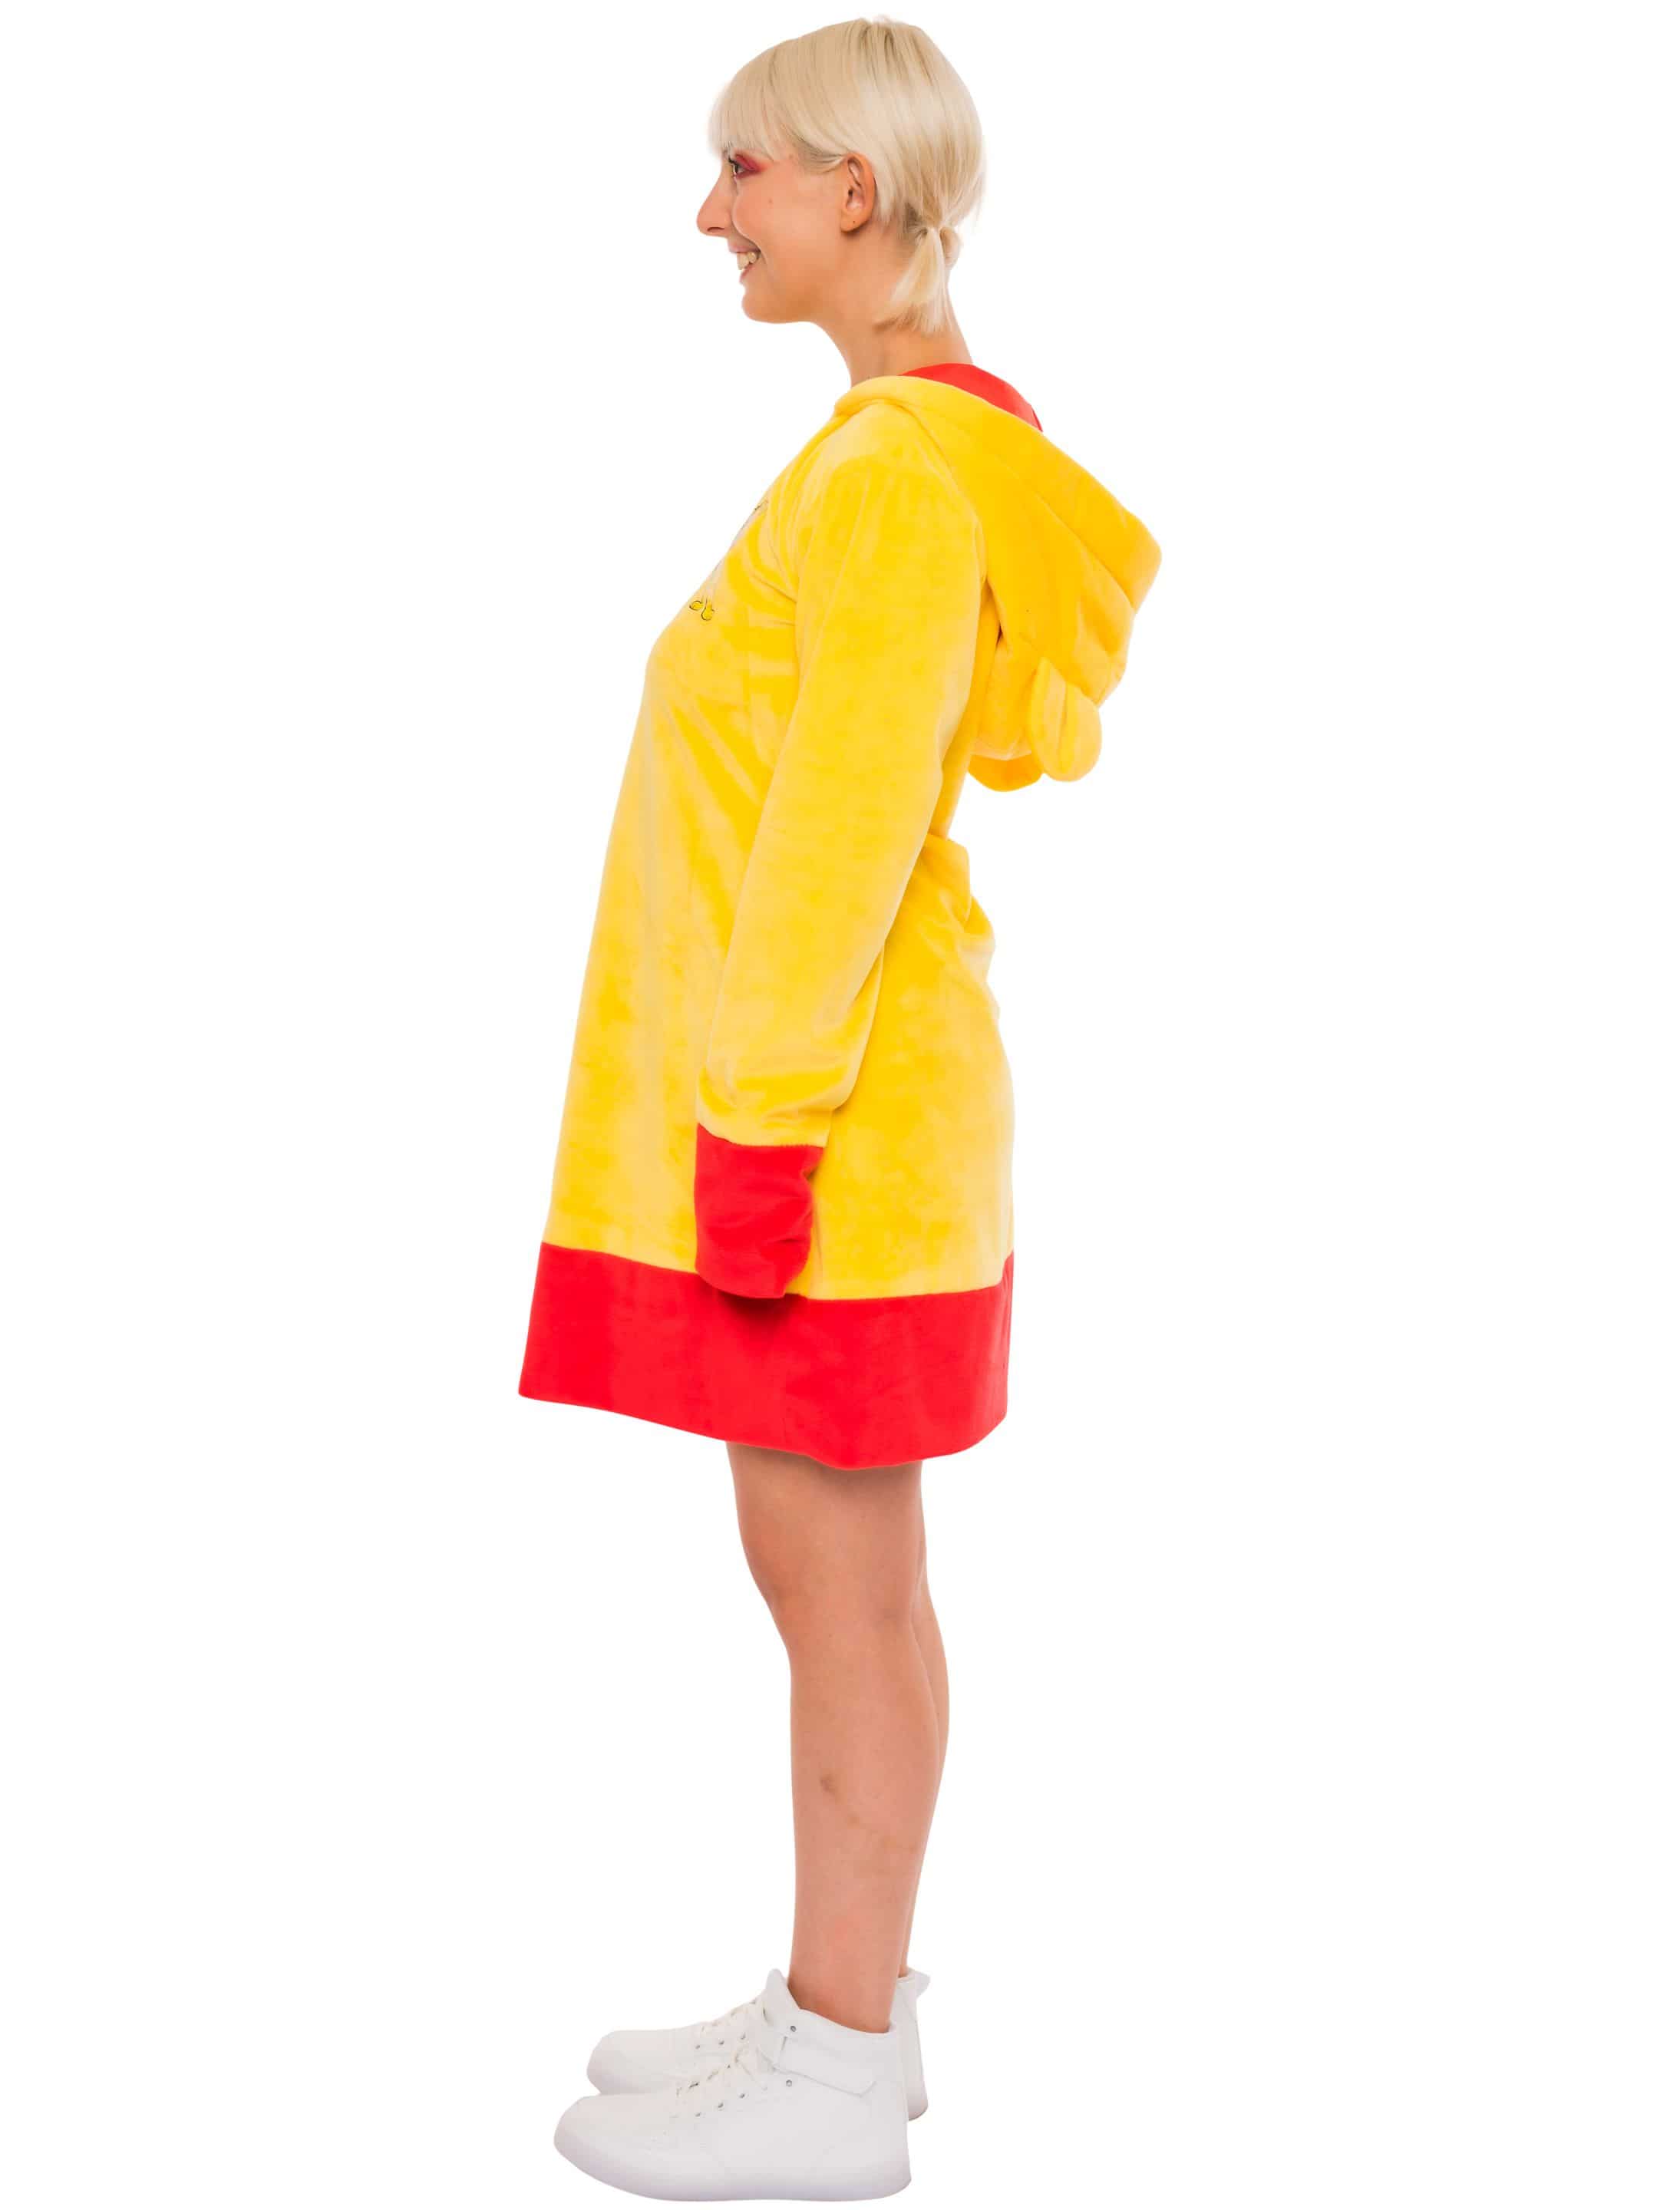 Kleid HARIBO Goldbären Plüsch  Damen rot/gelb 2XL/3XL